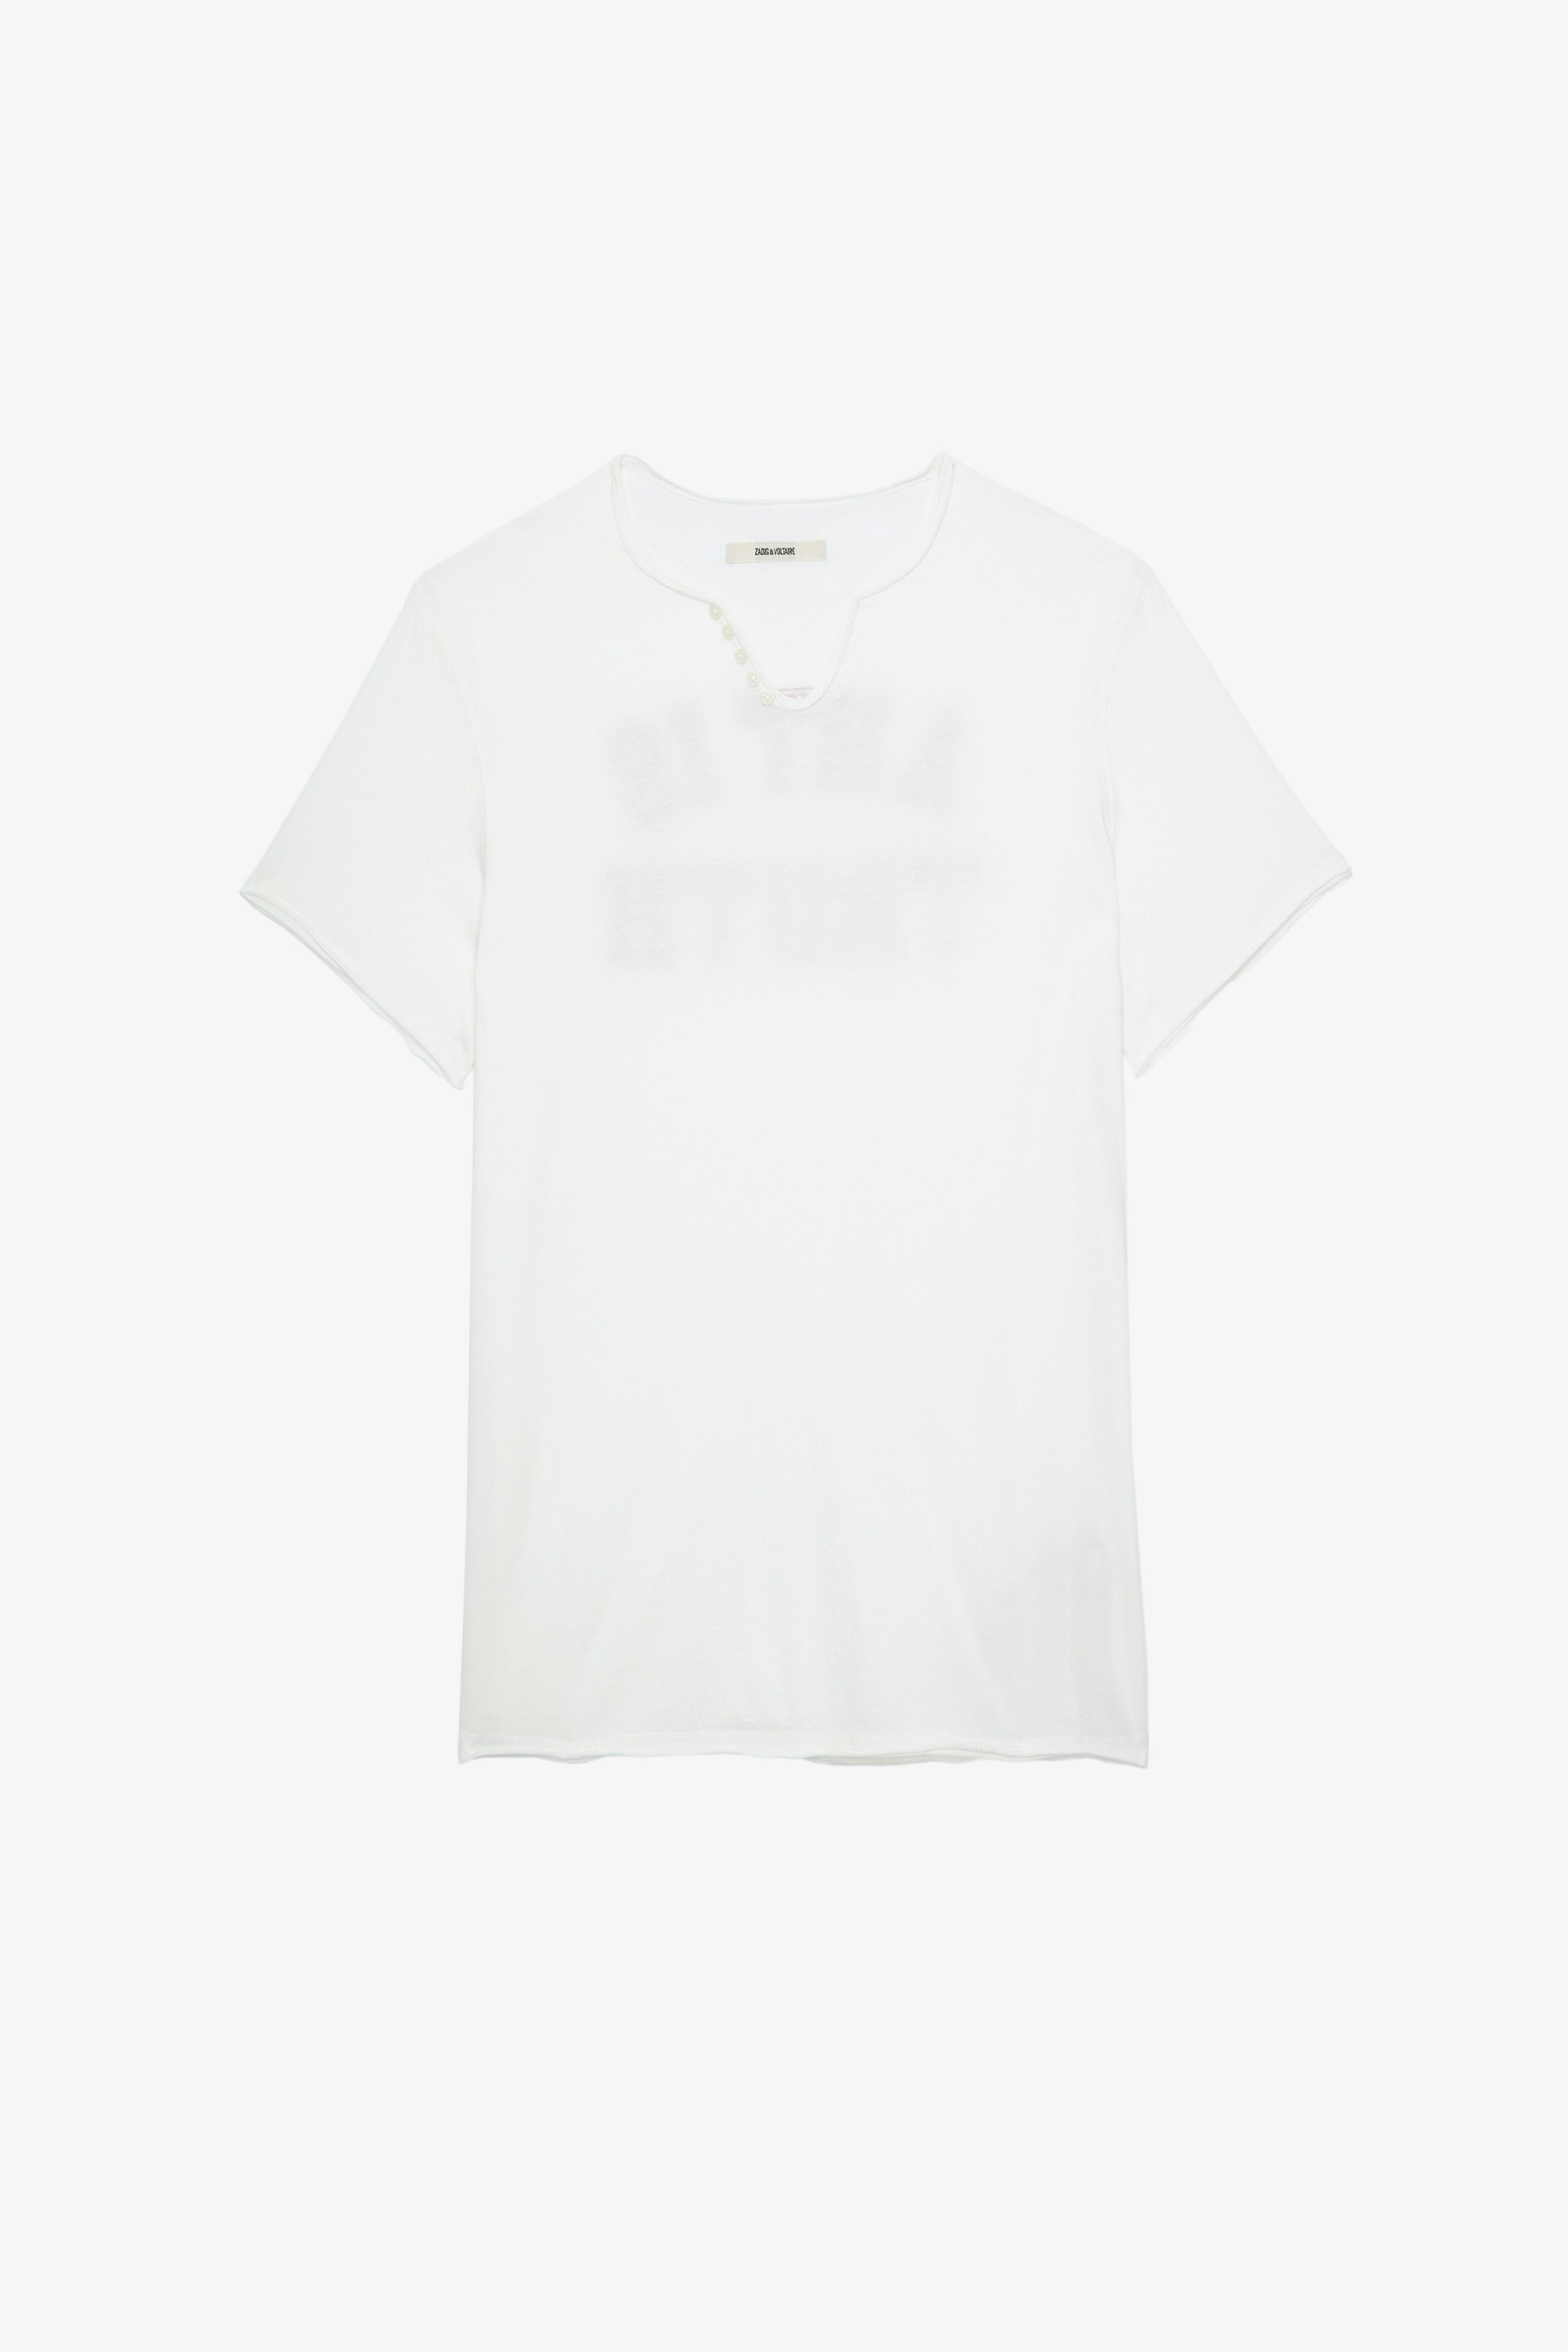 T-Shirt Monastir College Herren-T-Shirt aus weißer Baumwolle mit Henley-Ausschnitt, bedruckt mit Art is truth auf der Rückseite